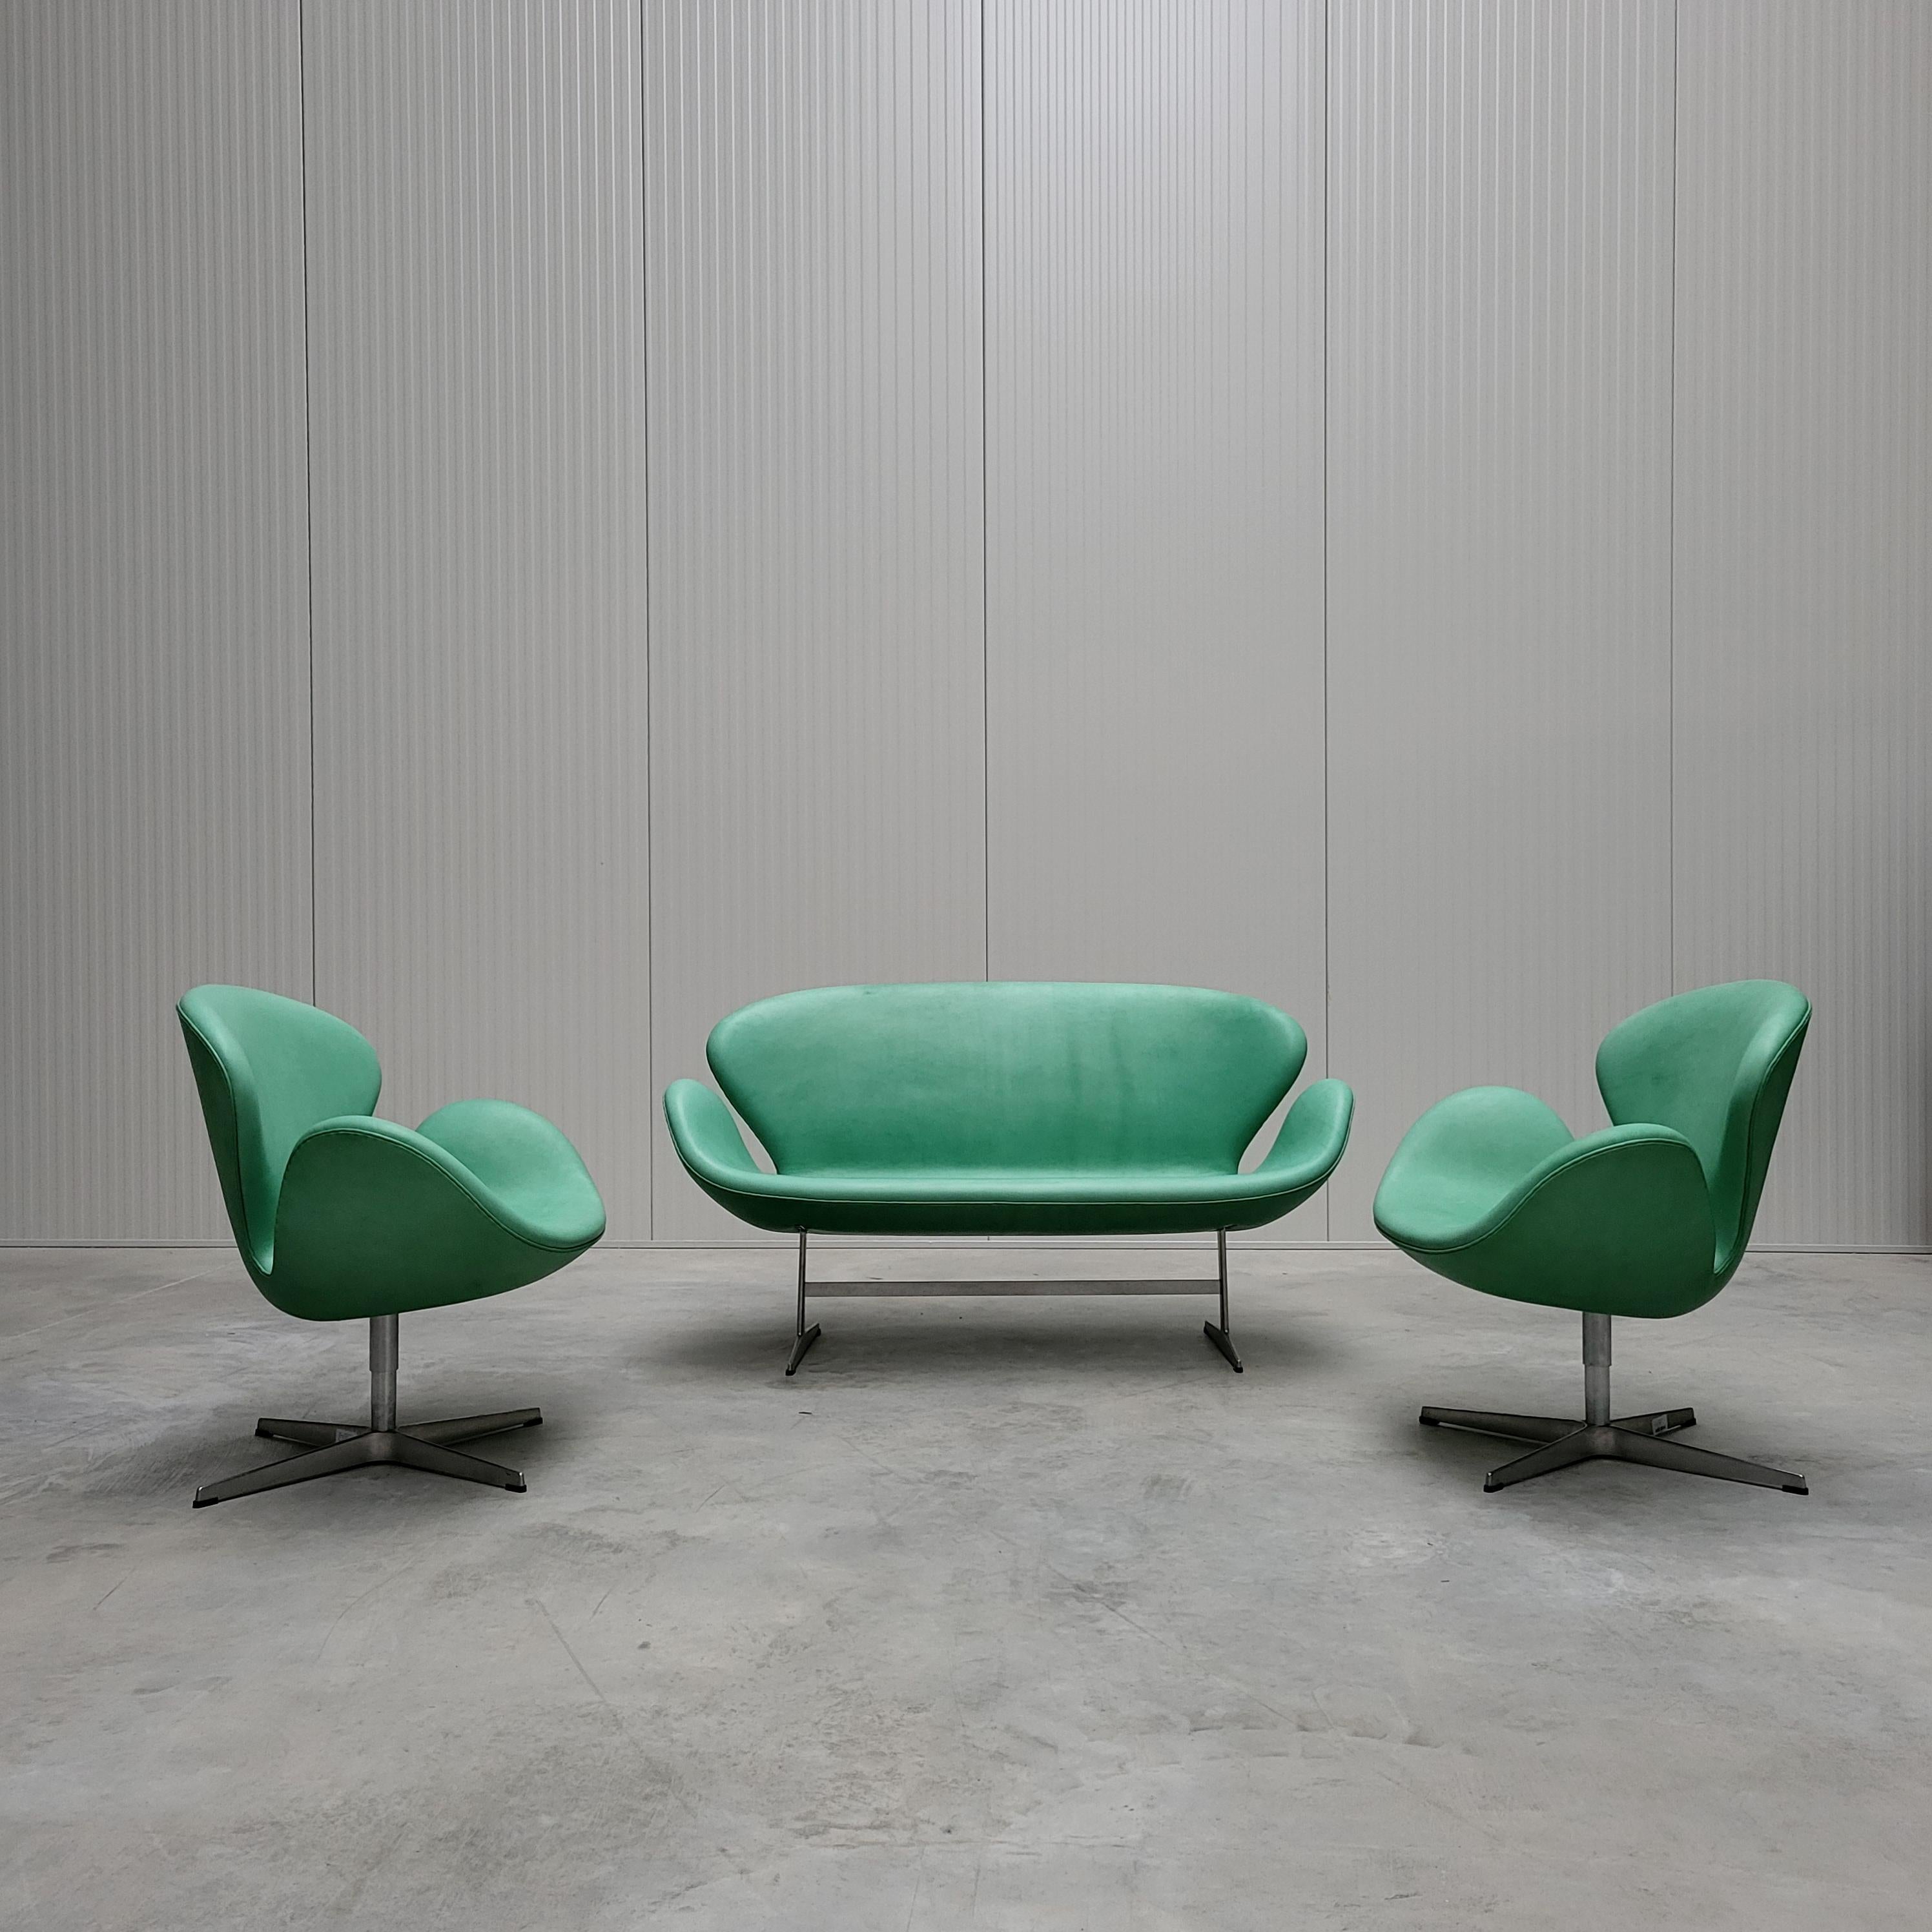 Ce magnifique ensemble de salon composé d'un canapé Swan et de deux chaises Hansen a été conçu dans les années 1950 par Arne Jacobsen pour l'hôtel SAS de Copenhague et produit par Fritz Hansen en 2006. 

L'ensemble Swan est doté d'un incroyable